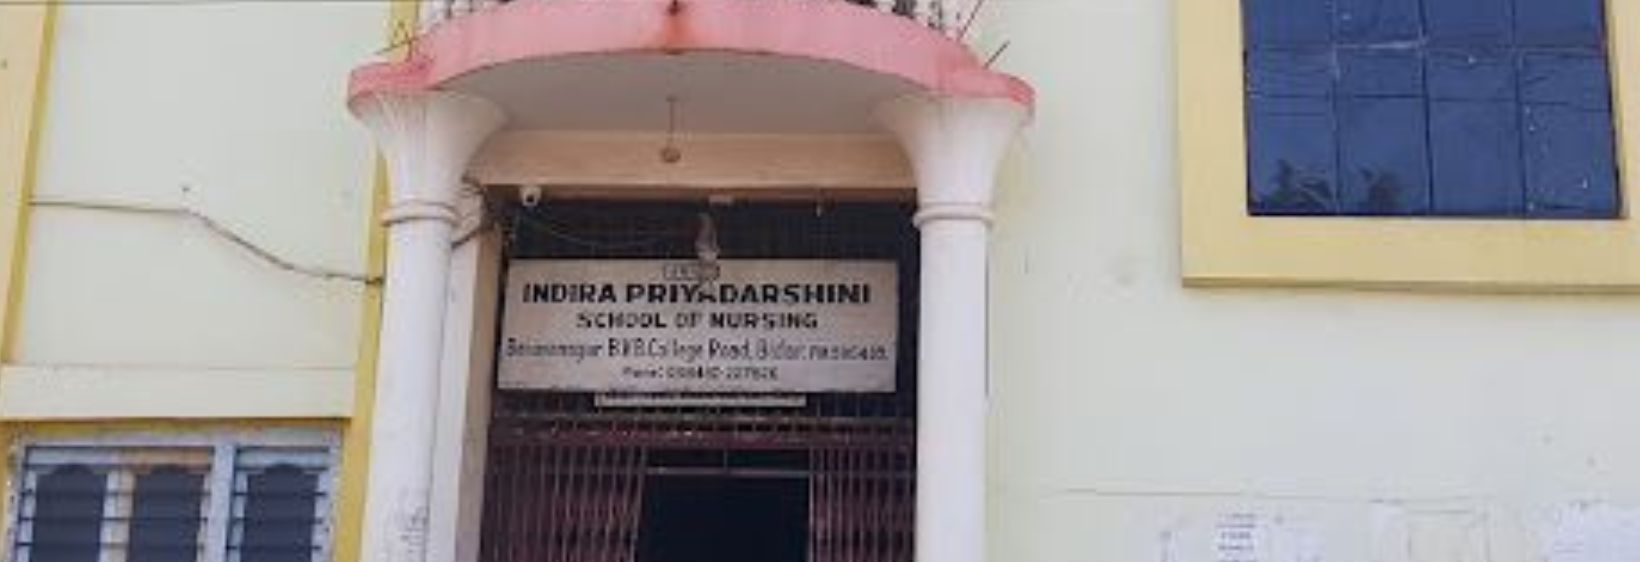 Indira Priyadarshini College of Nursing - Bidar